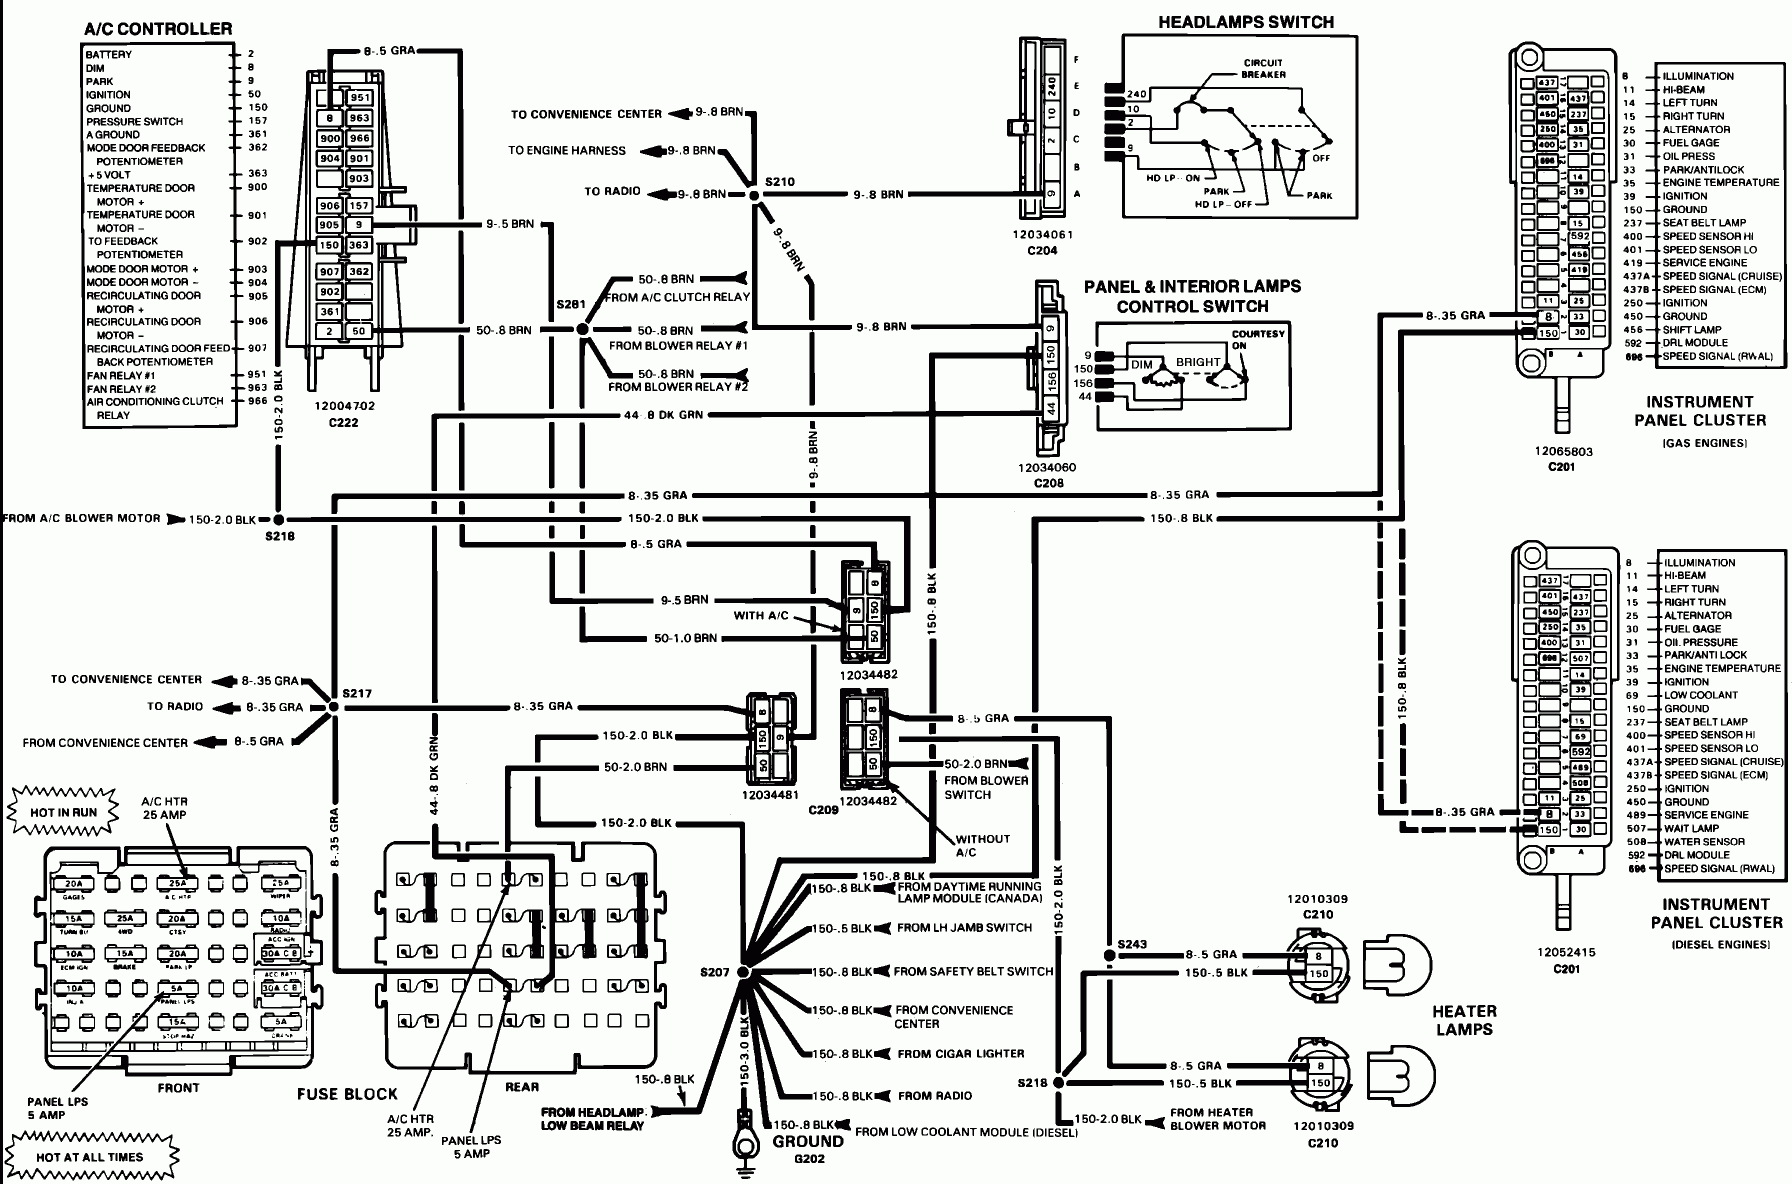 1973 Chevy Ignition Wiring - Wiring Diagram Data - Starter Solenoid Wiring Diagram